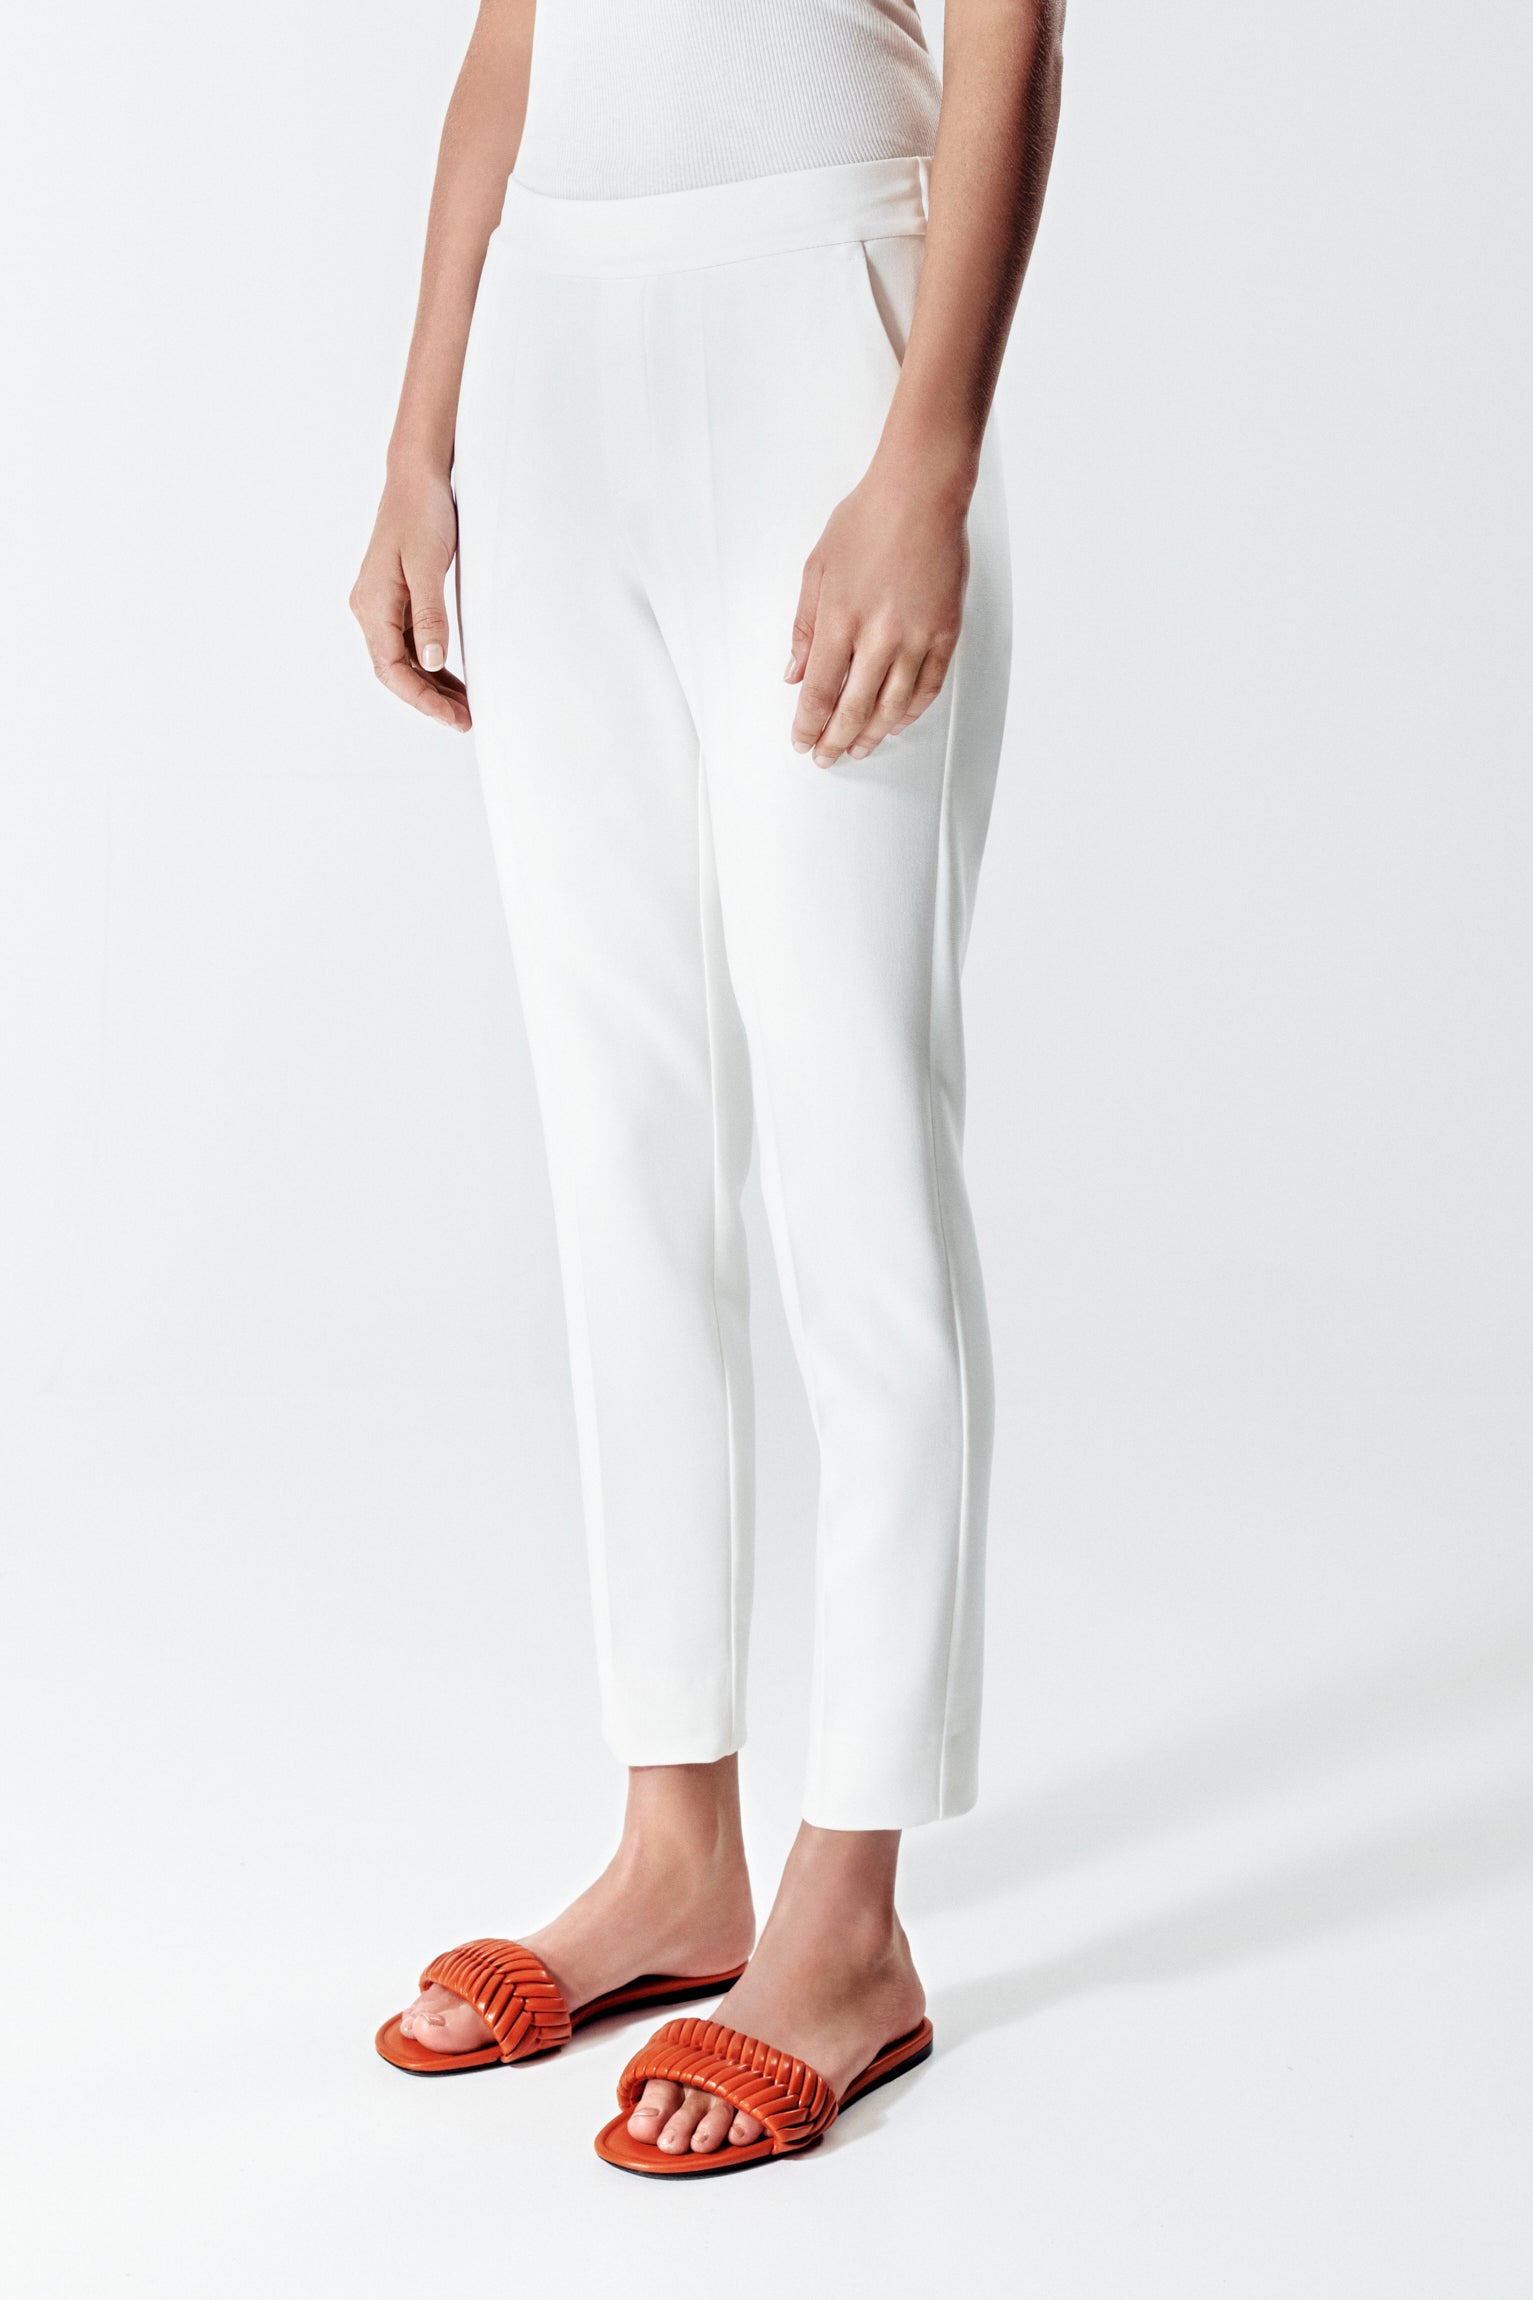 Ann OFF-WHITE Trousers